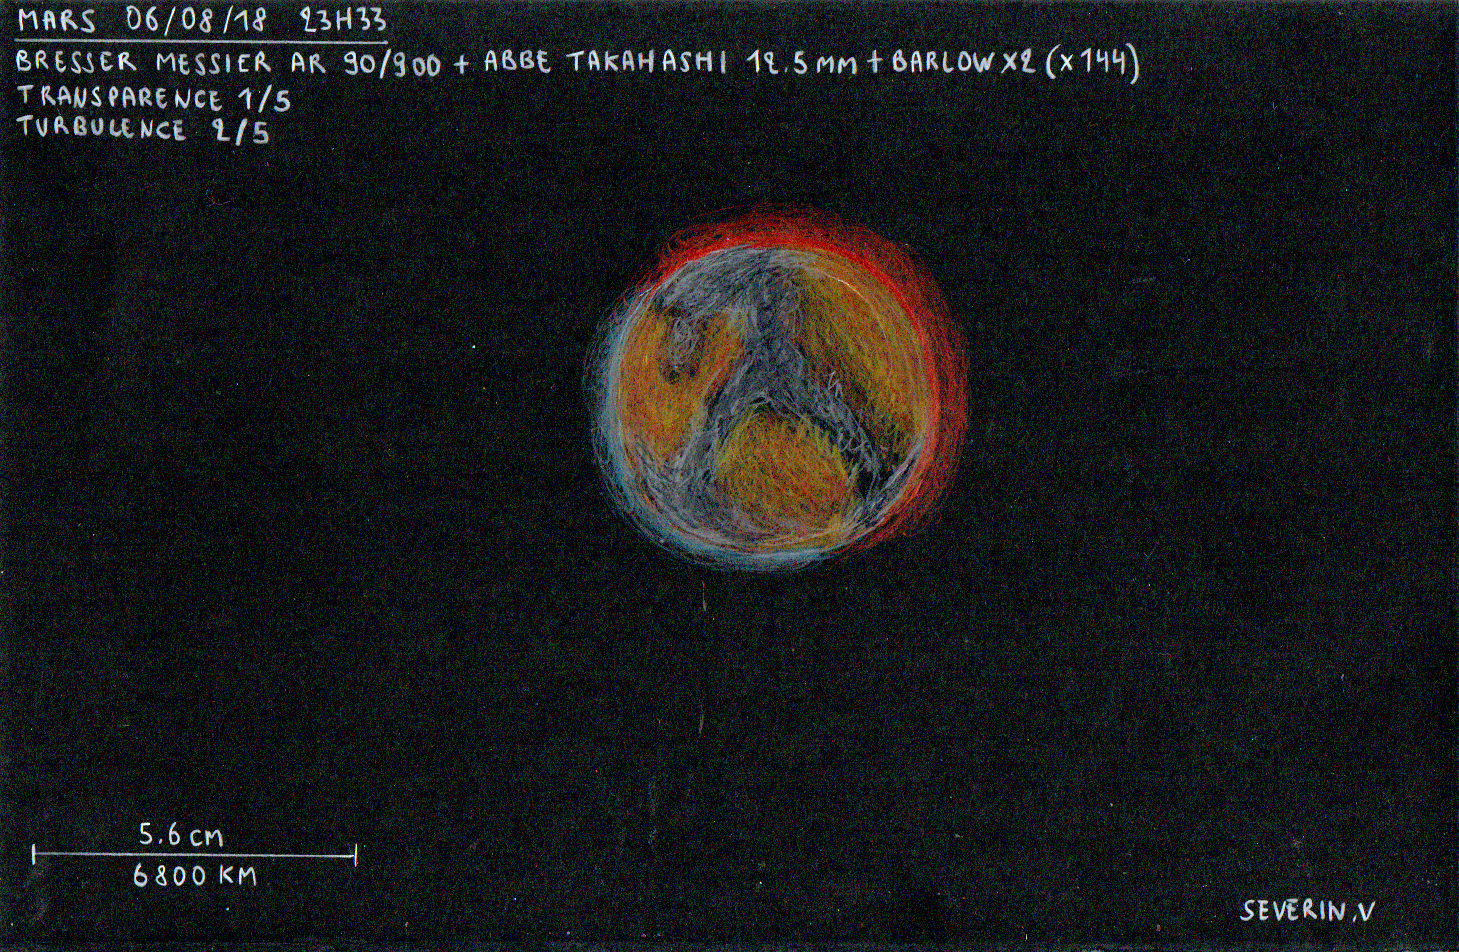 large.MARS-06-08-18.jpg.ca7e71c14ba84e3c101a0ad6d2402a66.jpg